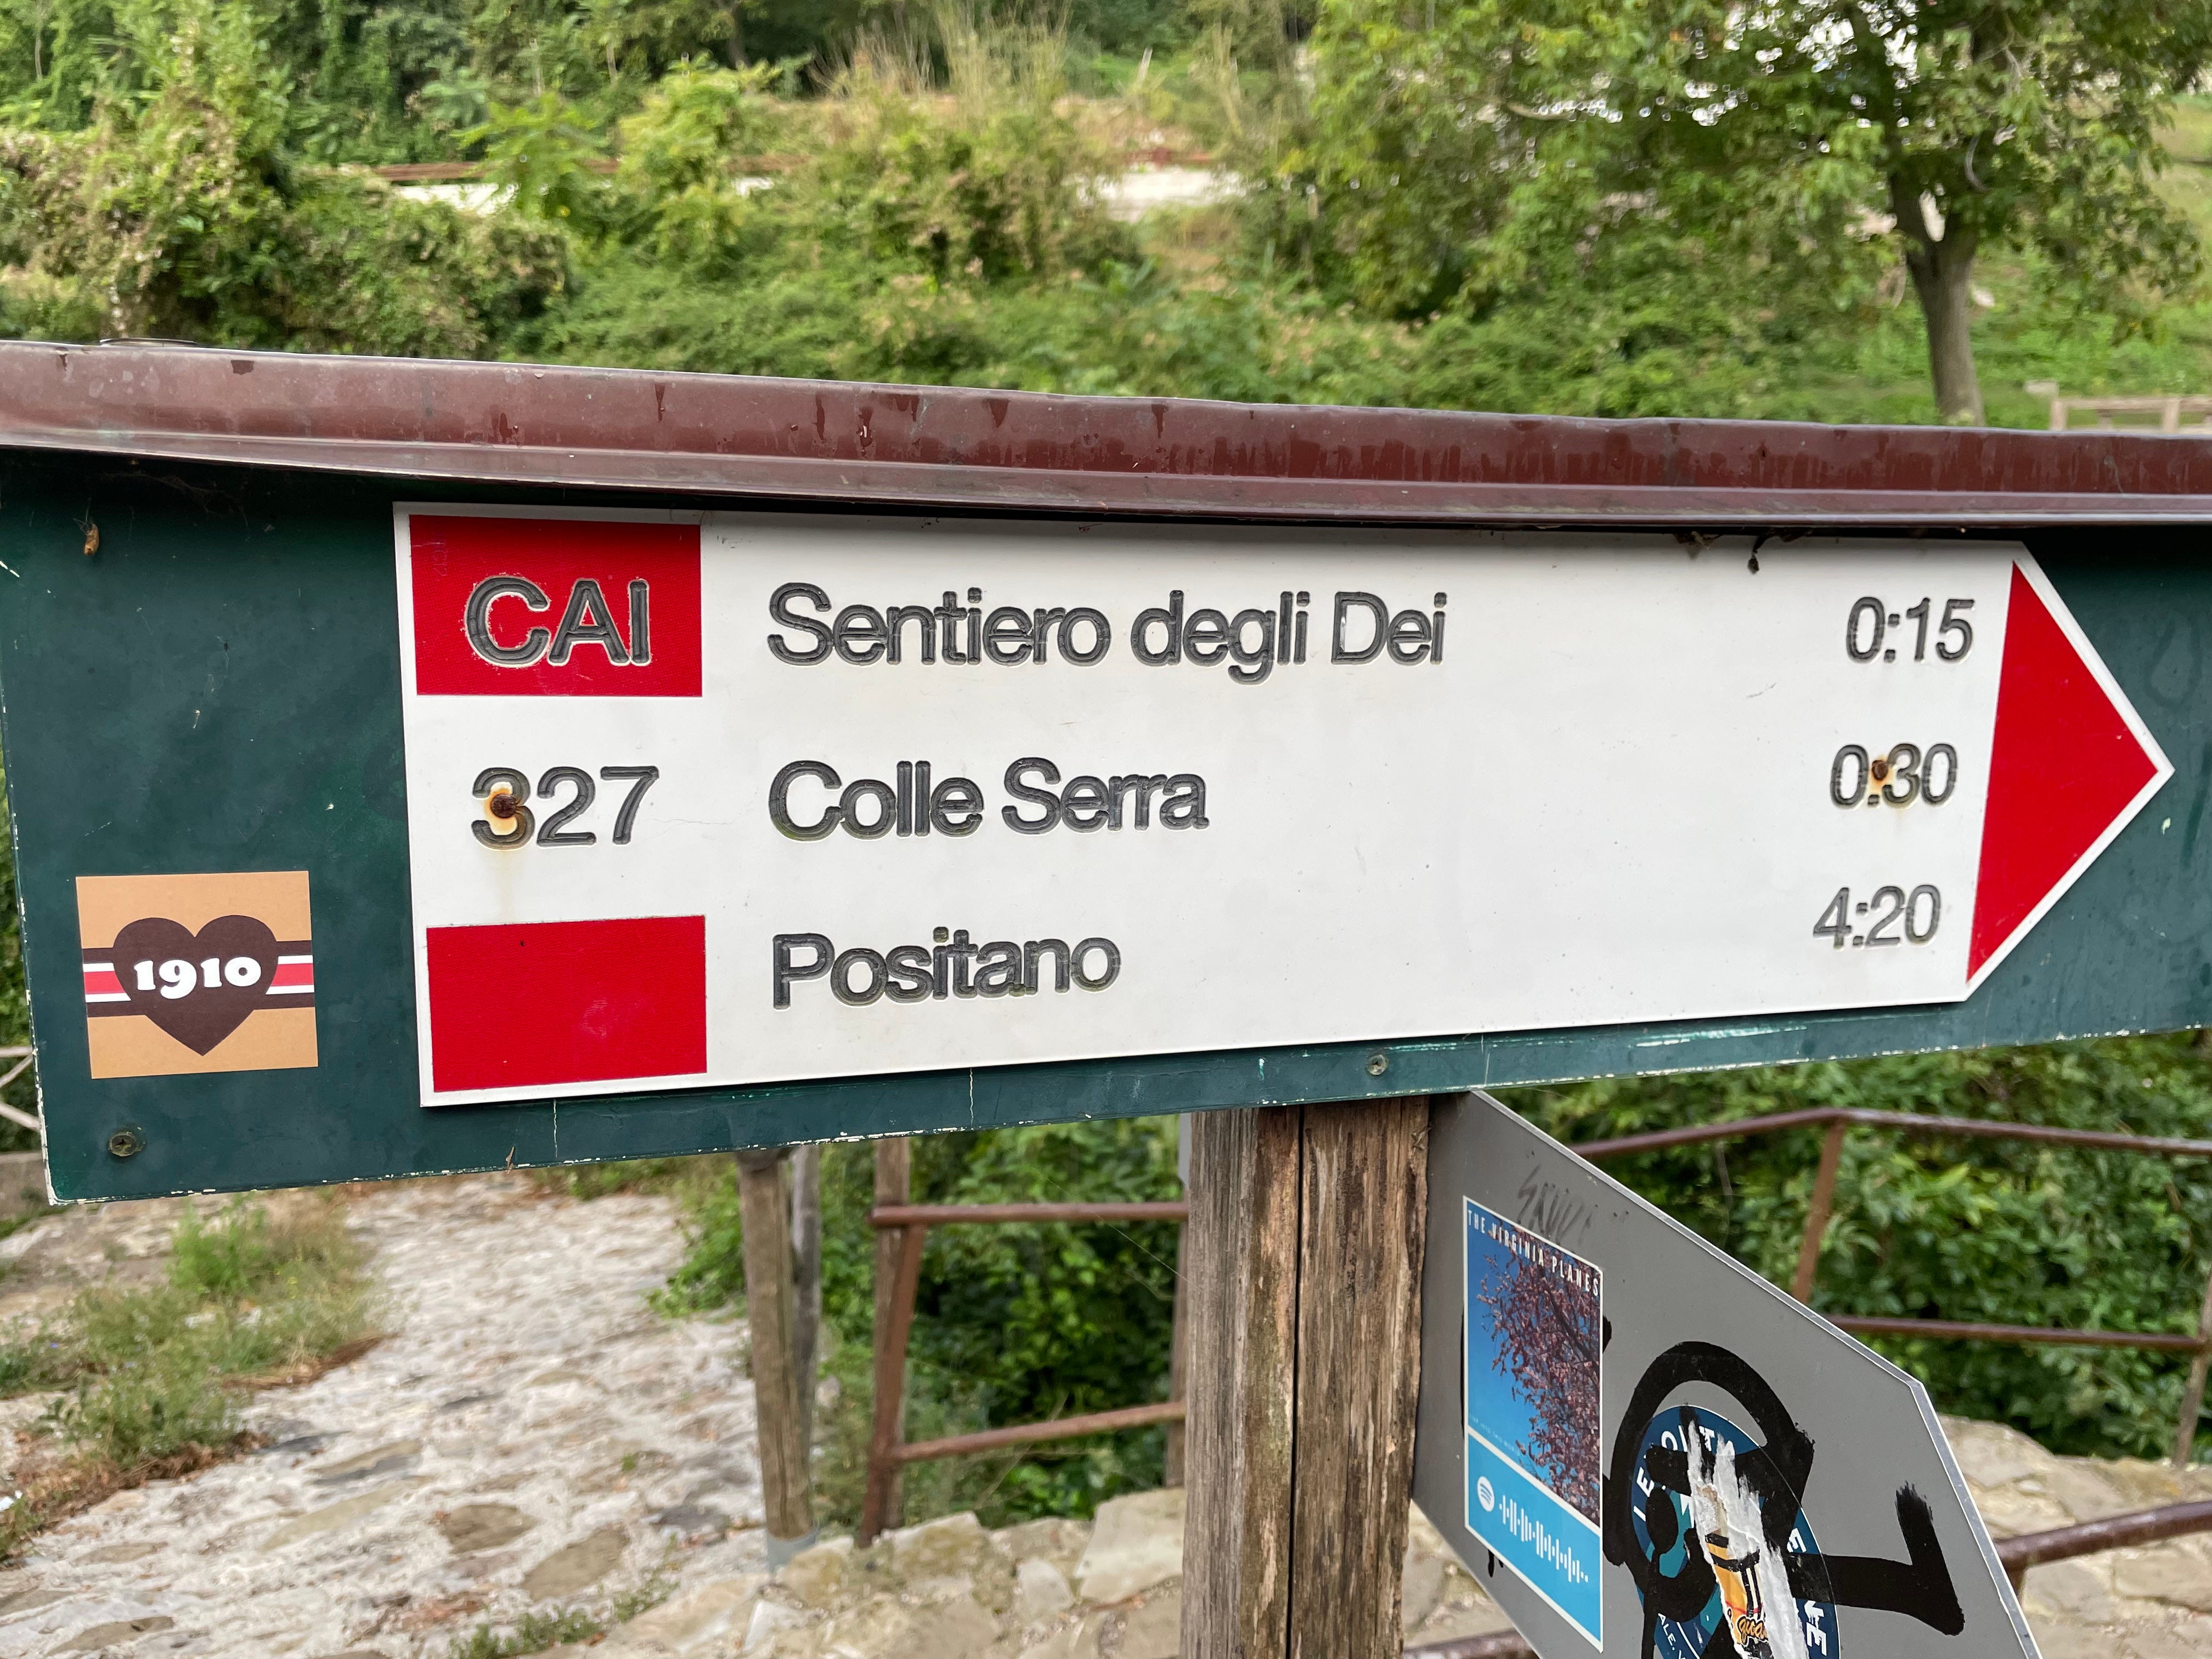 Ein Schild mit Wegbeschreibungen zum Sentiero degli Dei, Colle Serra und Positano.